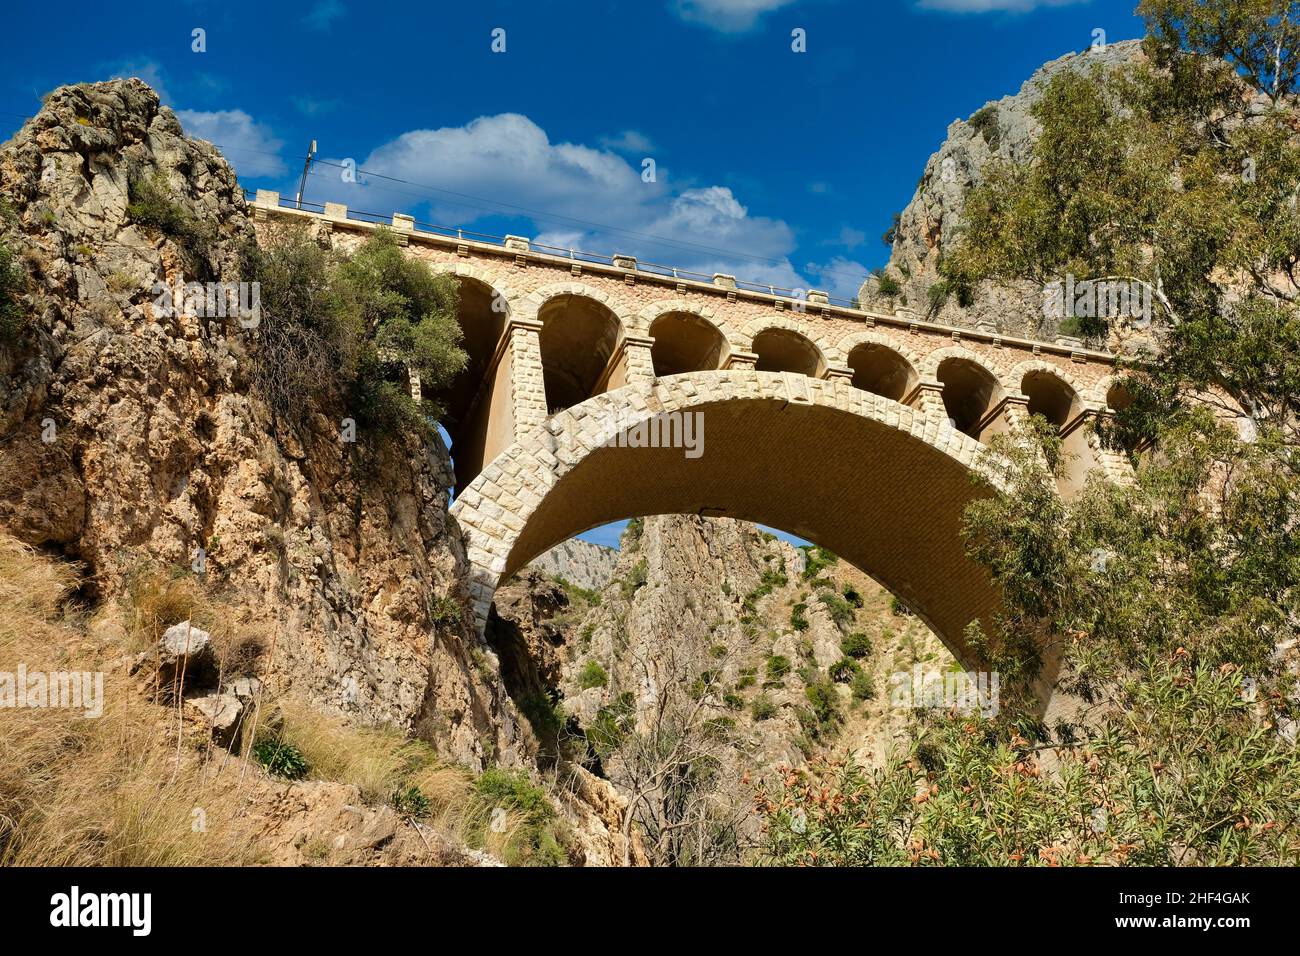 Train bridge of El Chorro in desfiladero de los gaitanes in Malaga (Spain) Stock Photo